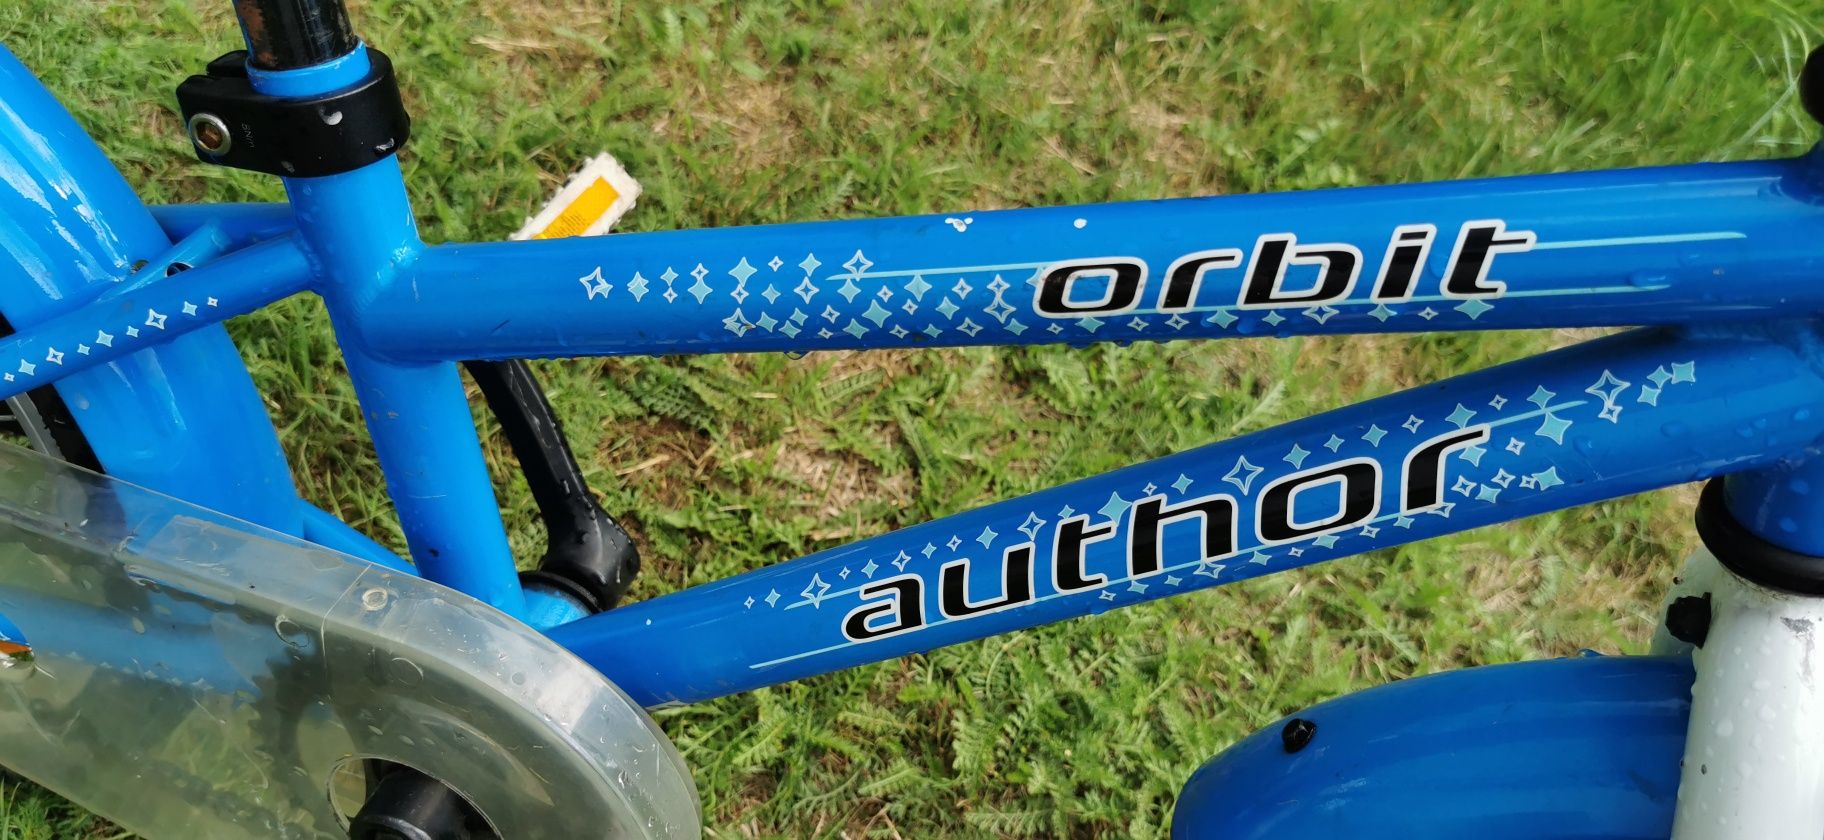 Rower niebieski firmy Author, model Orbit, rozmiar kola 16